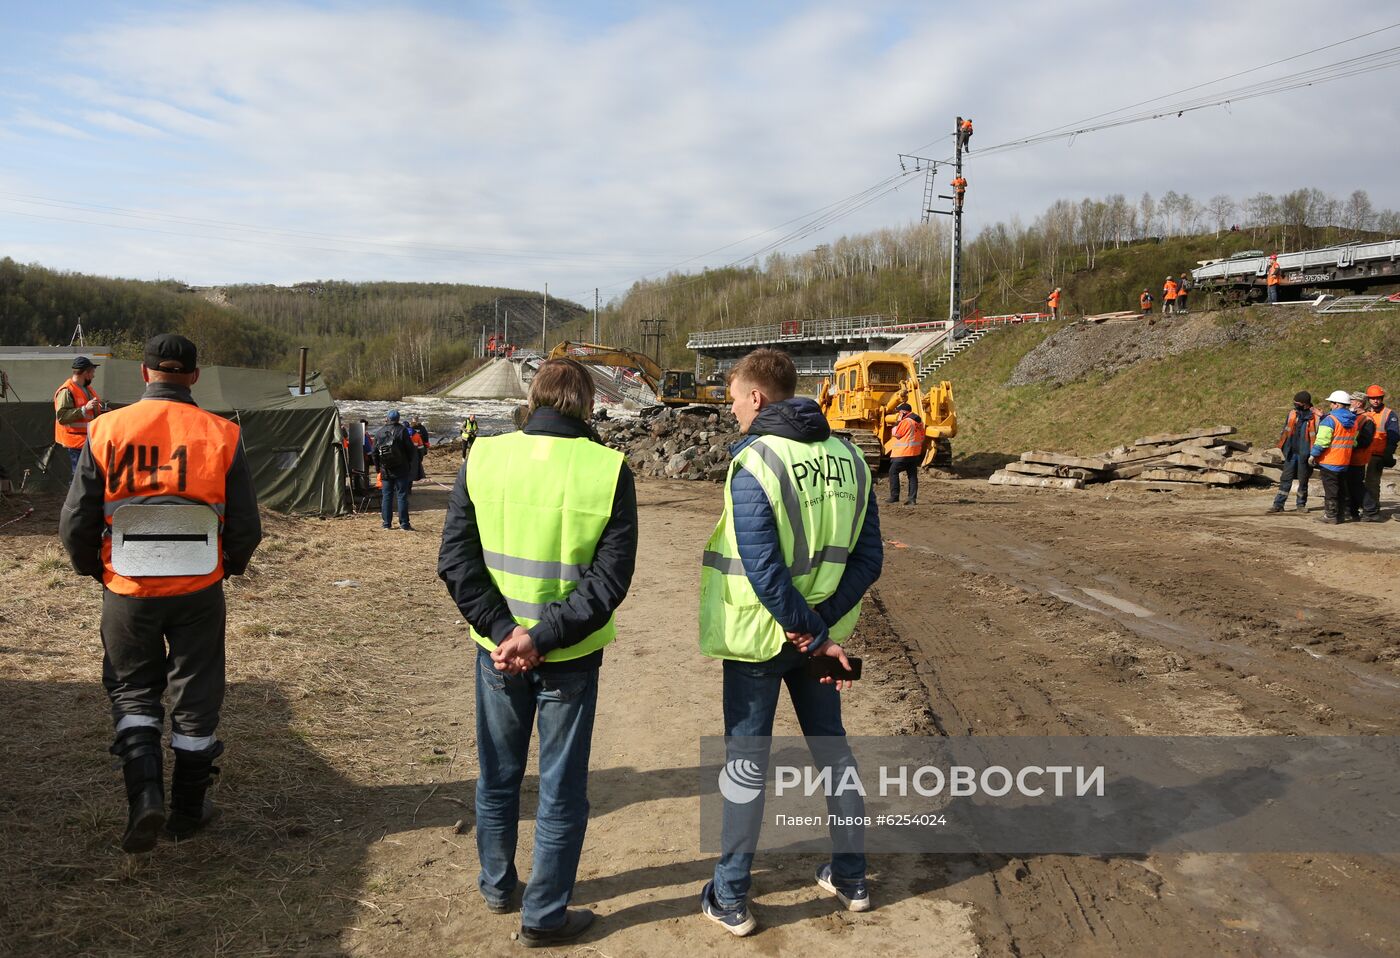 Железнодорожный мост обрушился в Мурманской области